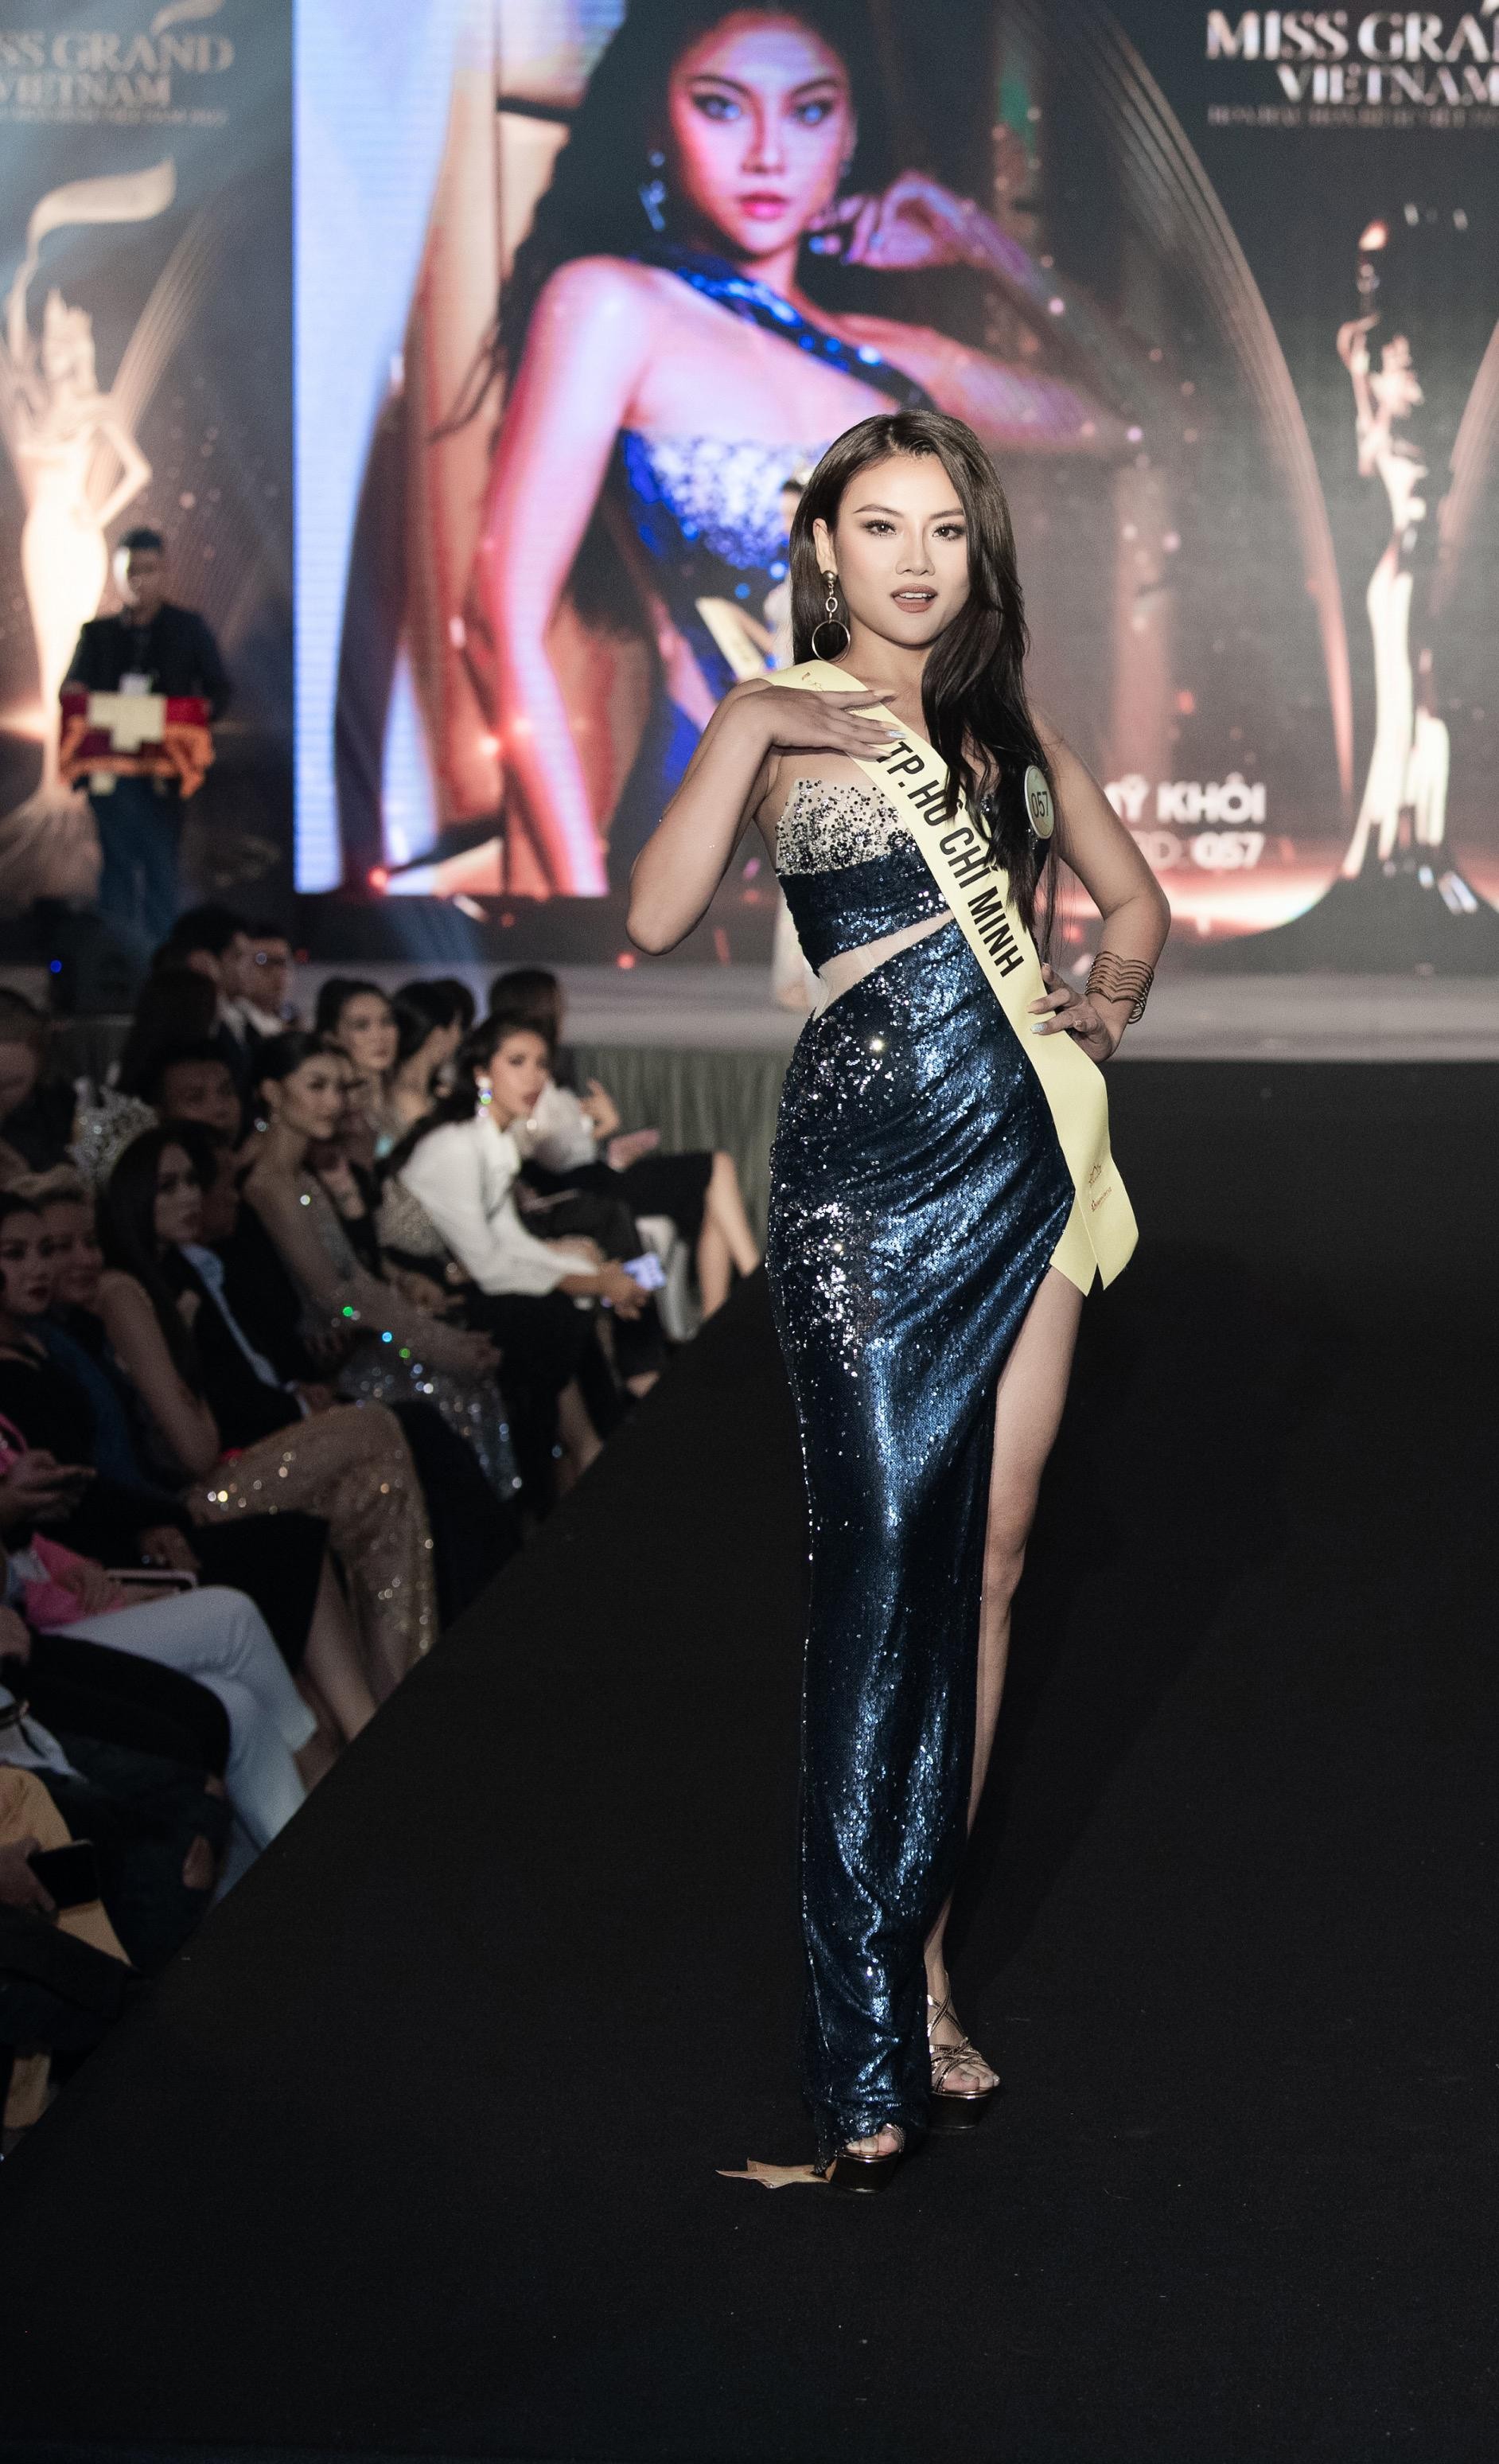 Mai Ngô, Quỳnh Châu tung chiêu catwalk độc đáo tại lễ nhận sash của Miss Grand Vietnam 2022-6